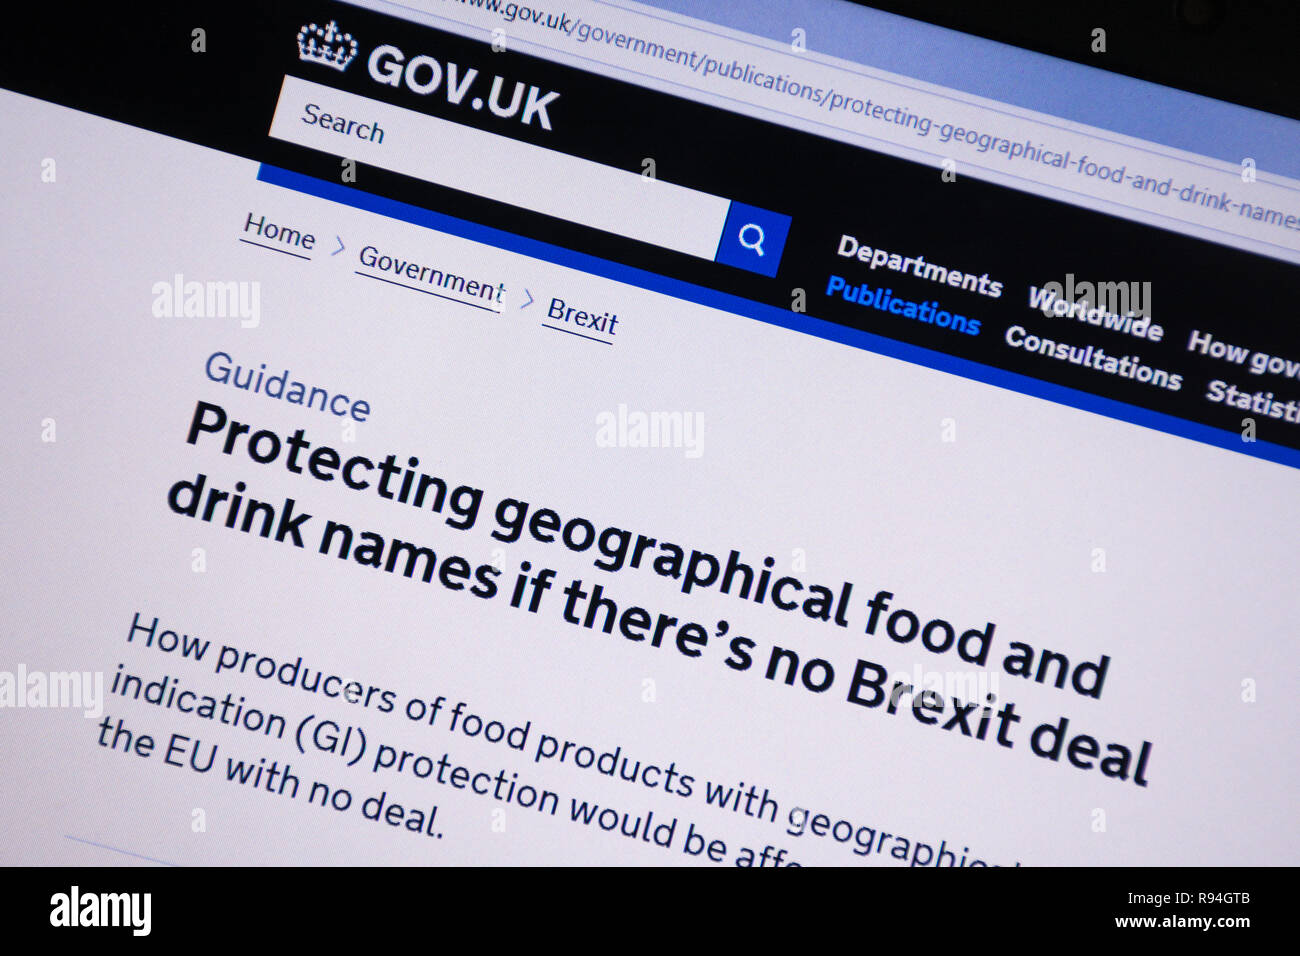 Immagine del calcolatore del gov.uk sito web che mostra consigli utili su come proteggere geografico di alimenti e bevande i nomi se non vi è alcuna trattativa Brexit Foto Stock